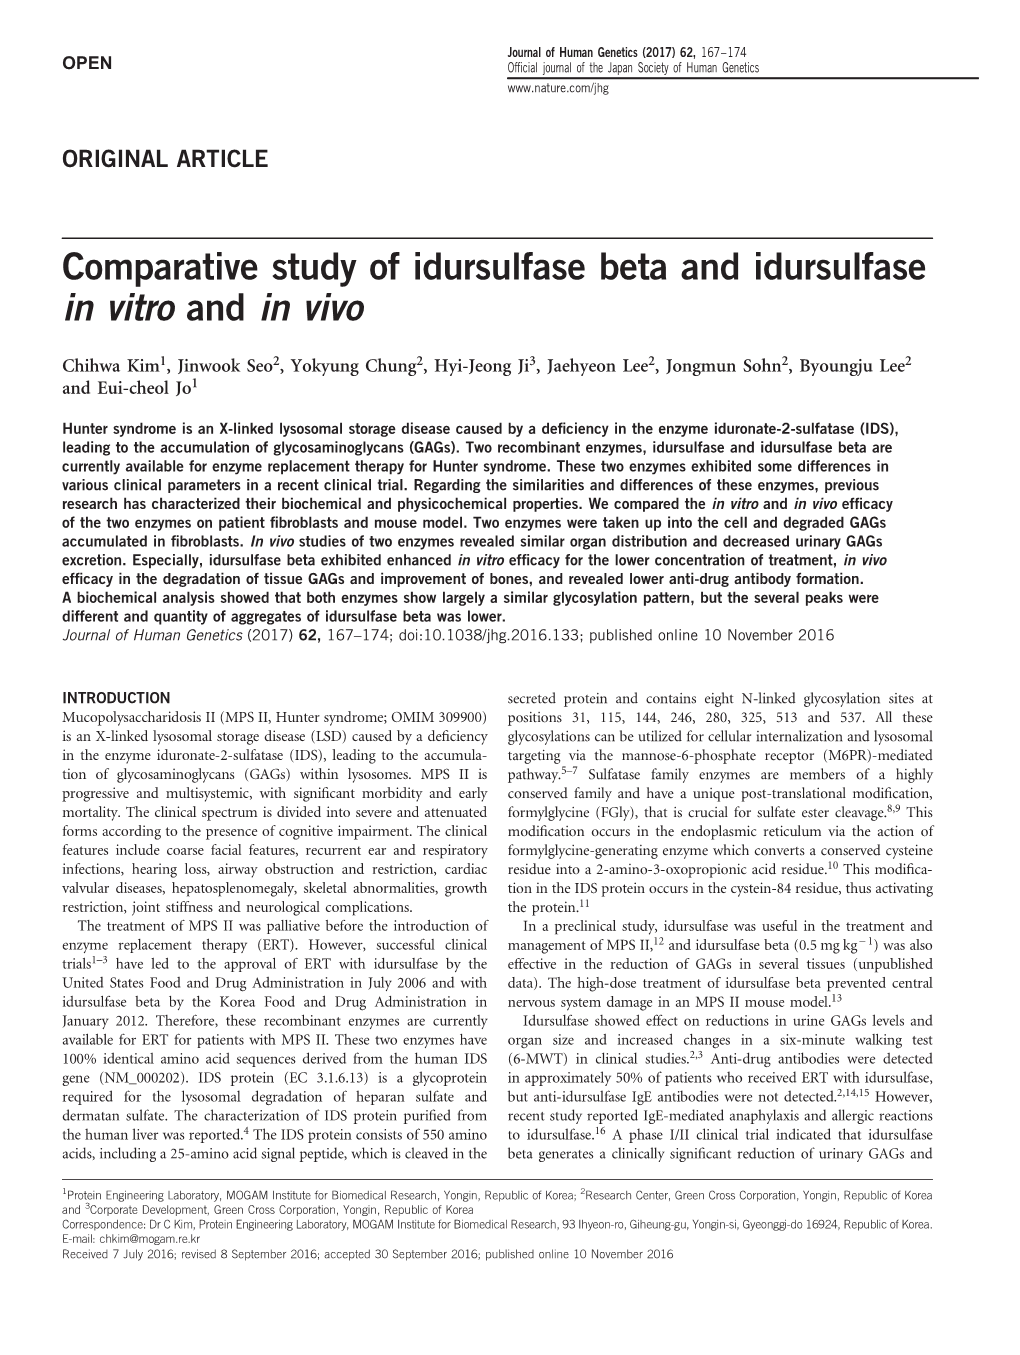 Comparative Study of Idursulfase Beta and Idursulfase in Vitro and in Vivo